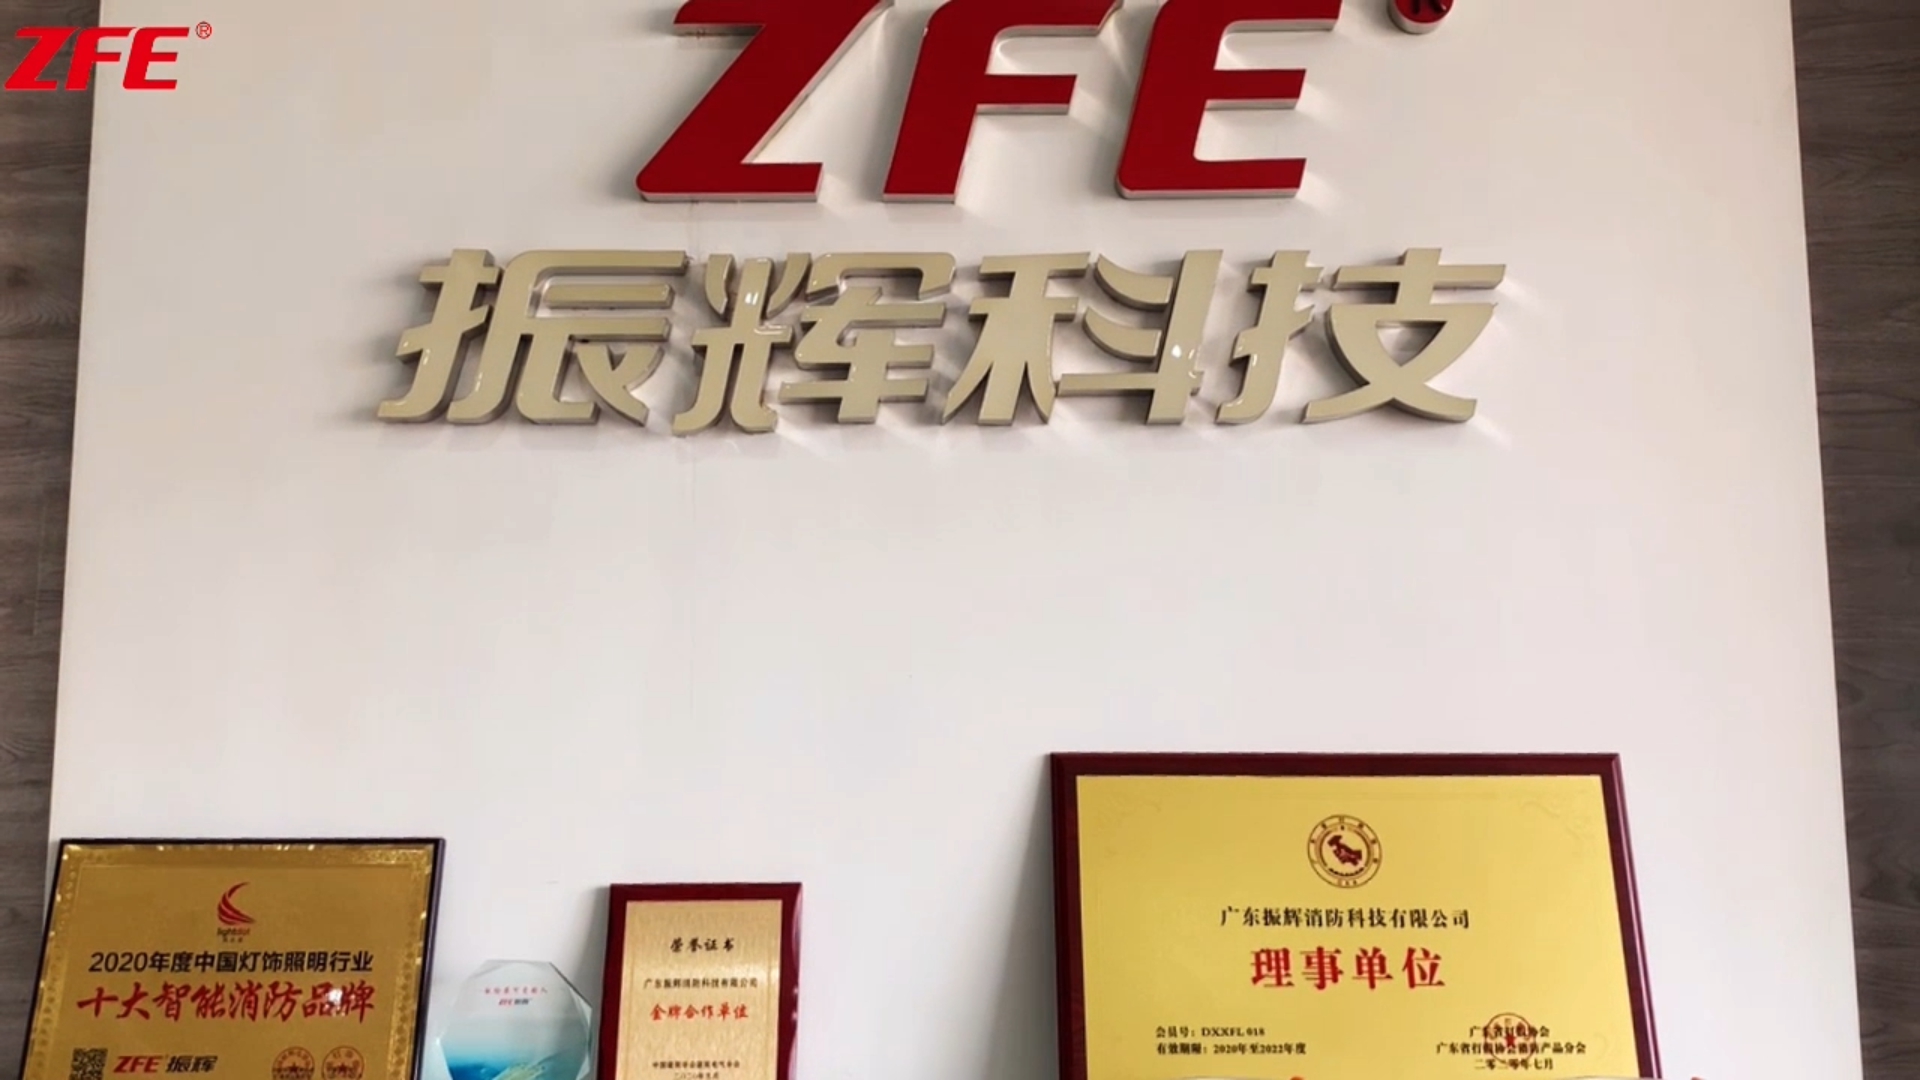 تأتي جمعيات الصناعة لزيارة شركة Guangdong Zhenhui Fire Technology Co.، Ltd.